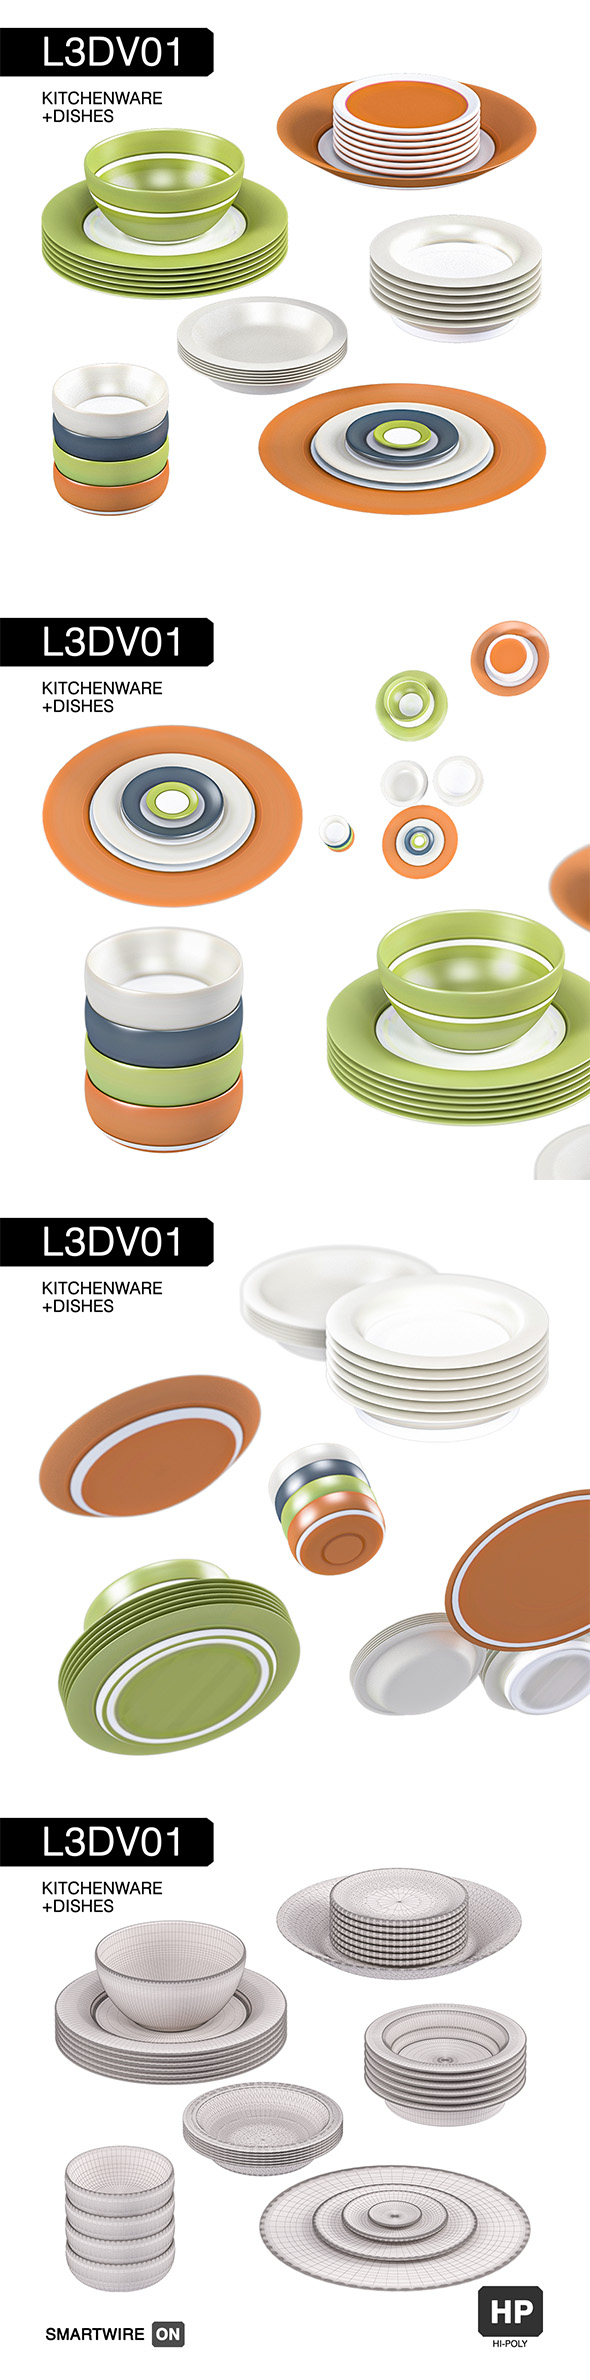 L3DV01G05 - kitchen - 3Docean 31053434